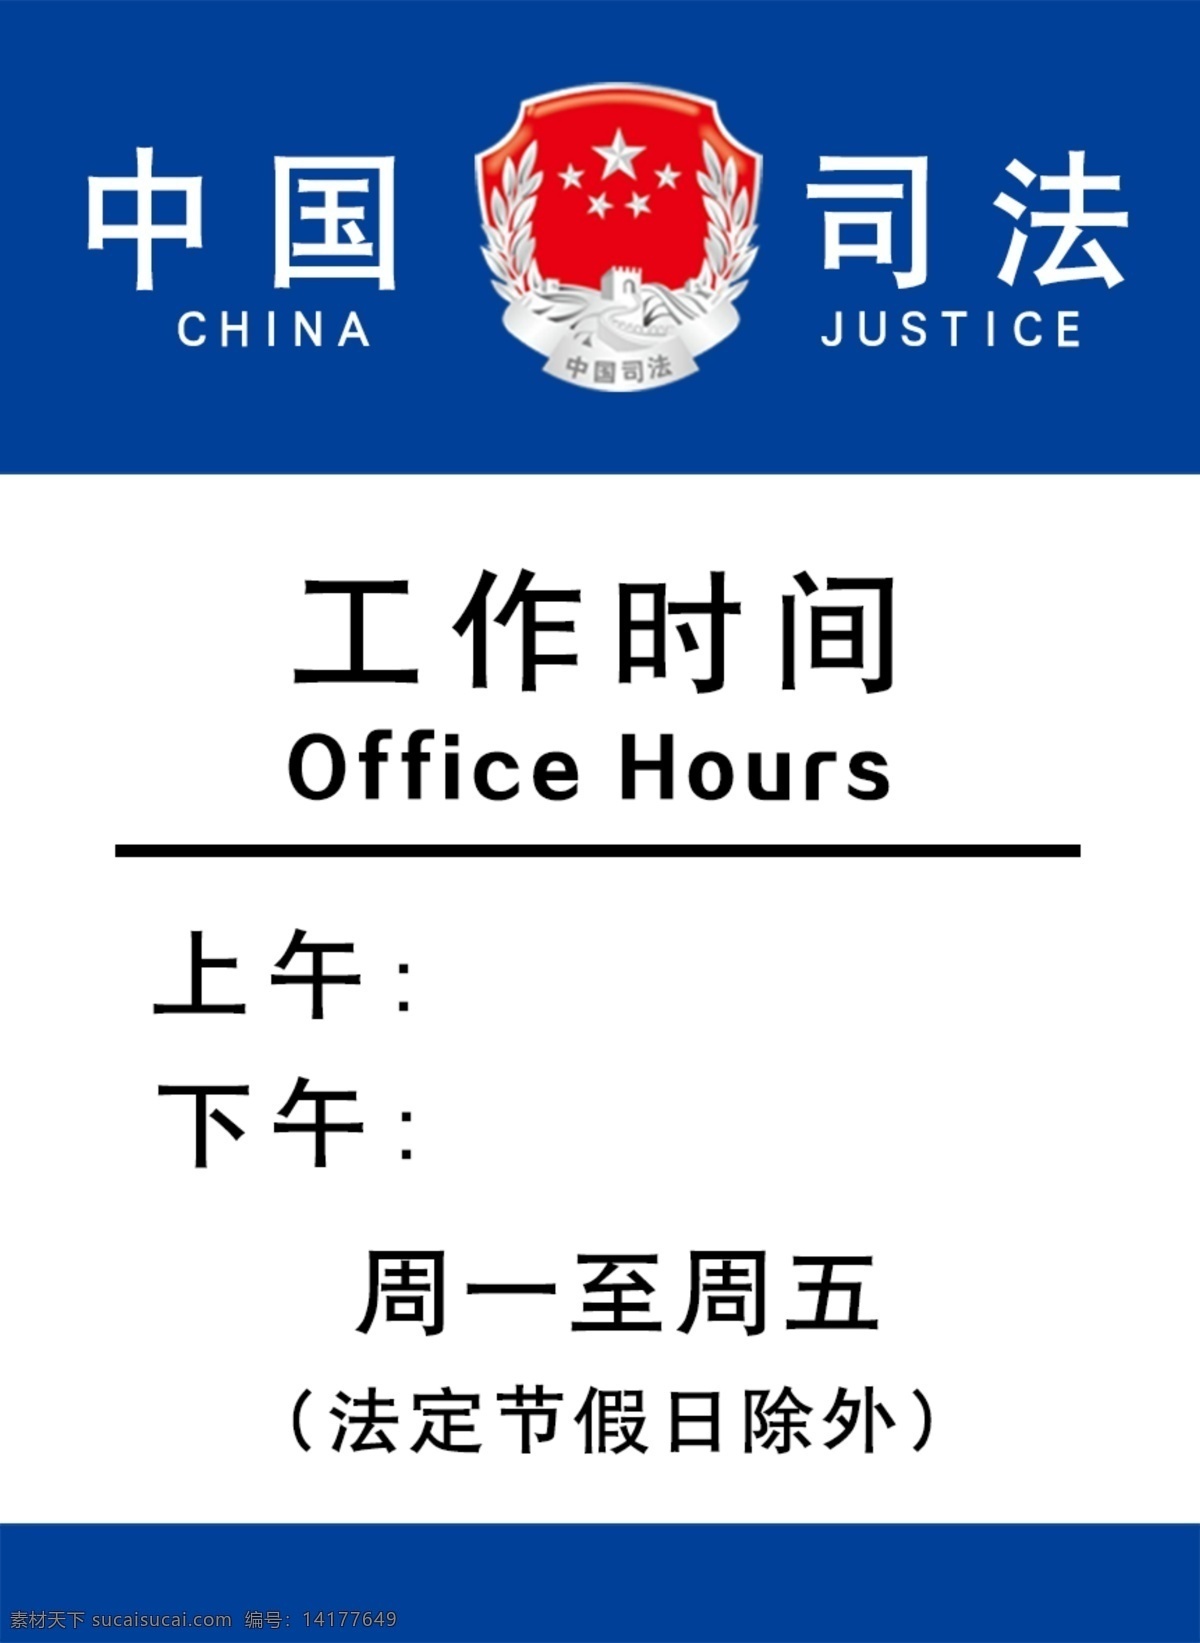 中国司法 司法标志 工作时间 司法牌 工作时间牌 上午下午 标志图标 公共标识标志